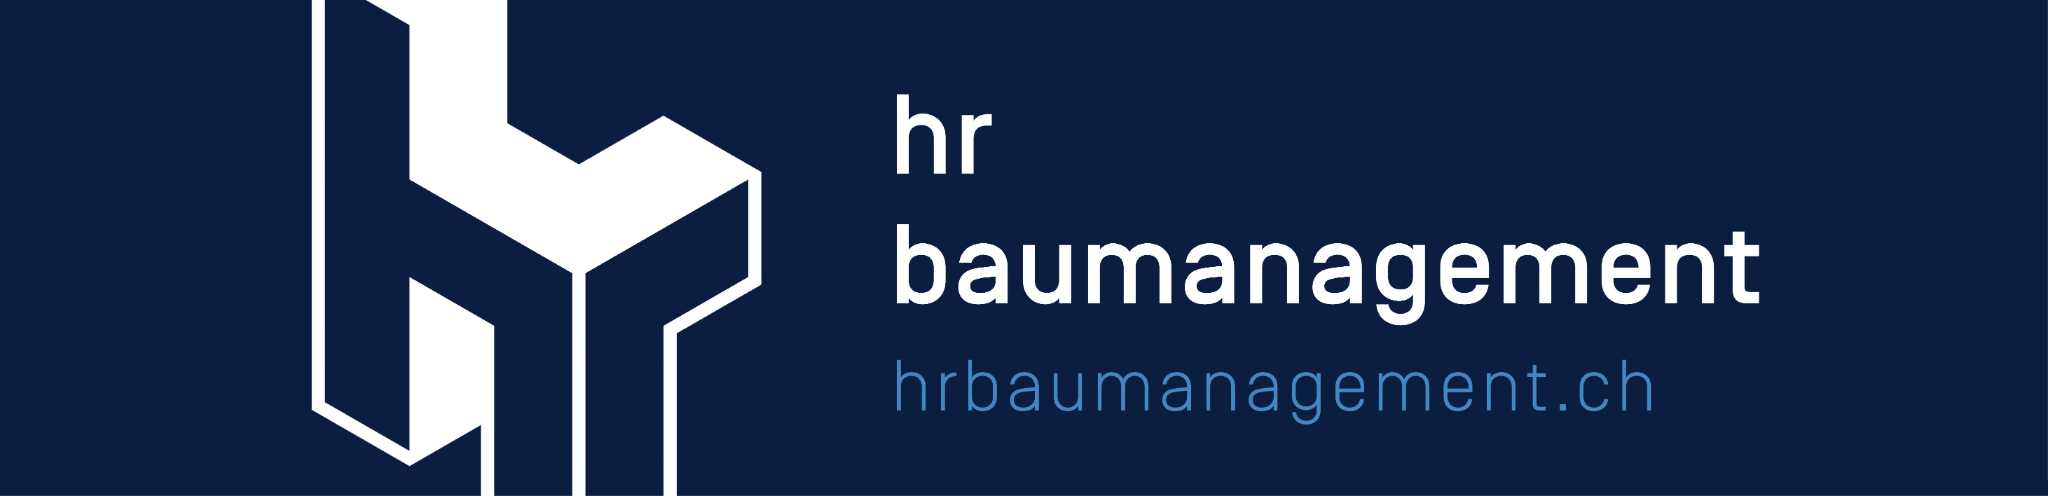 HR Baumanagement GmbH